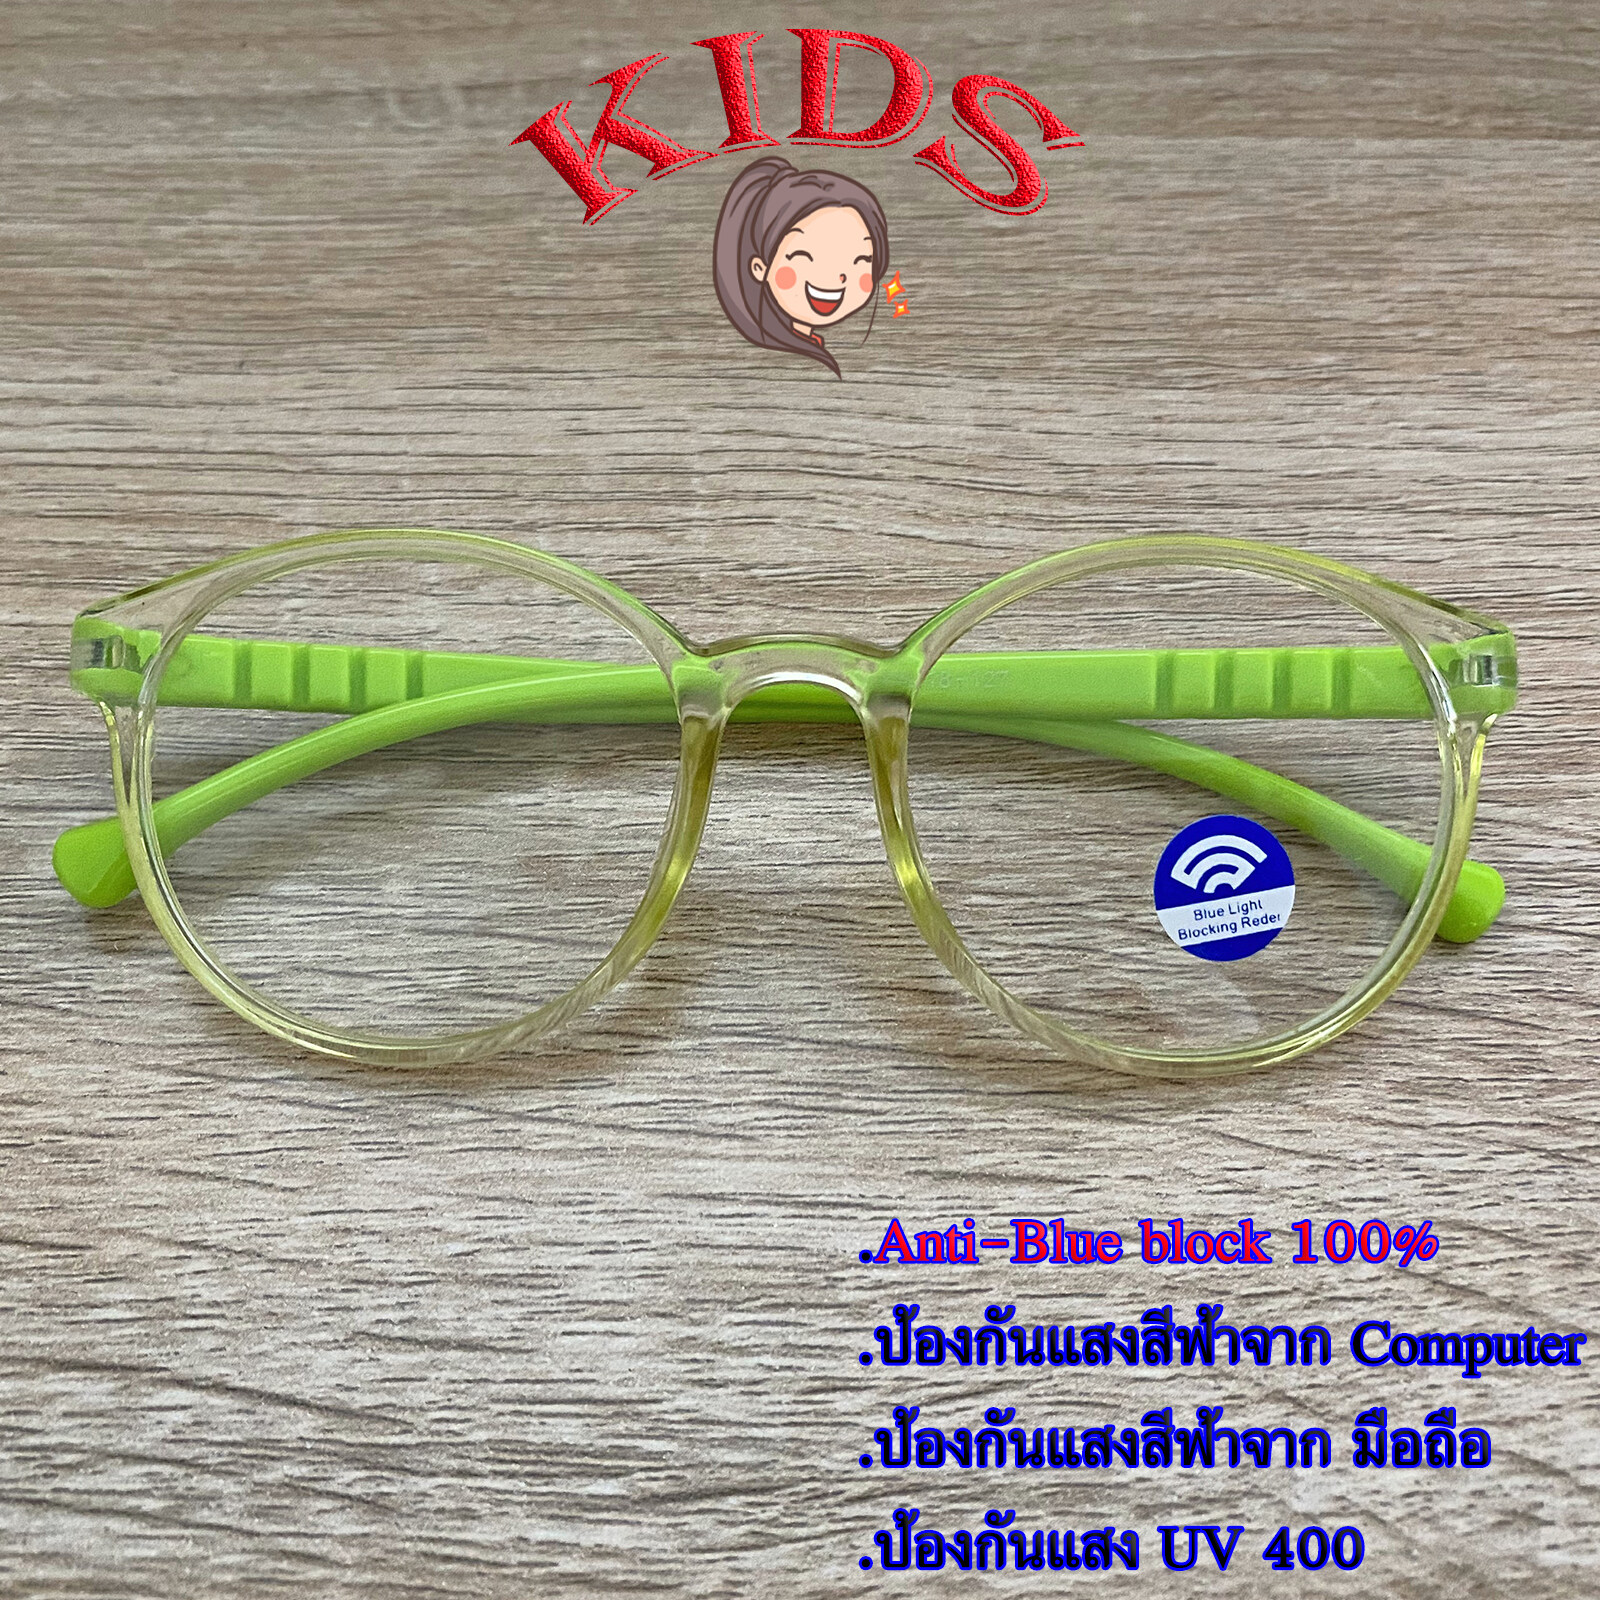 Blue Block แว่นตาเด็ก กรองแสงสีฟ้า กรองแสงคอม รุ่น 1013 สีเขียวกรอบใส พลาสติก พีซี เกรด เอ ขาข้อต่อ กรองแสงสูงสุด95% กัน UV 100% Glasses